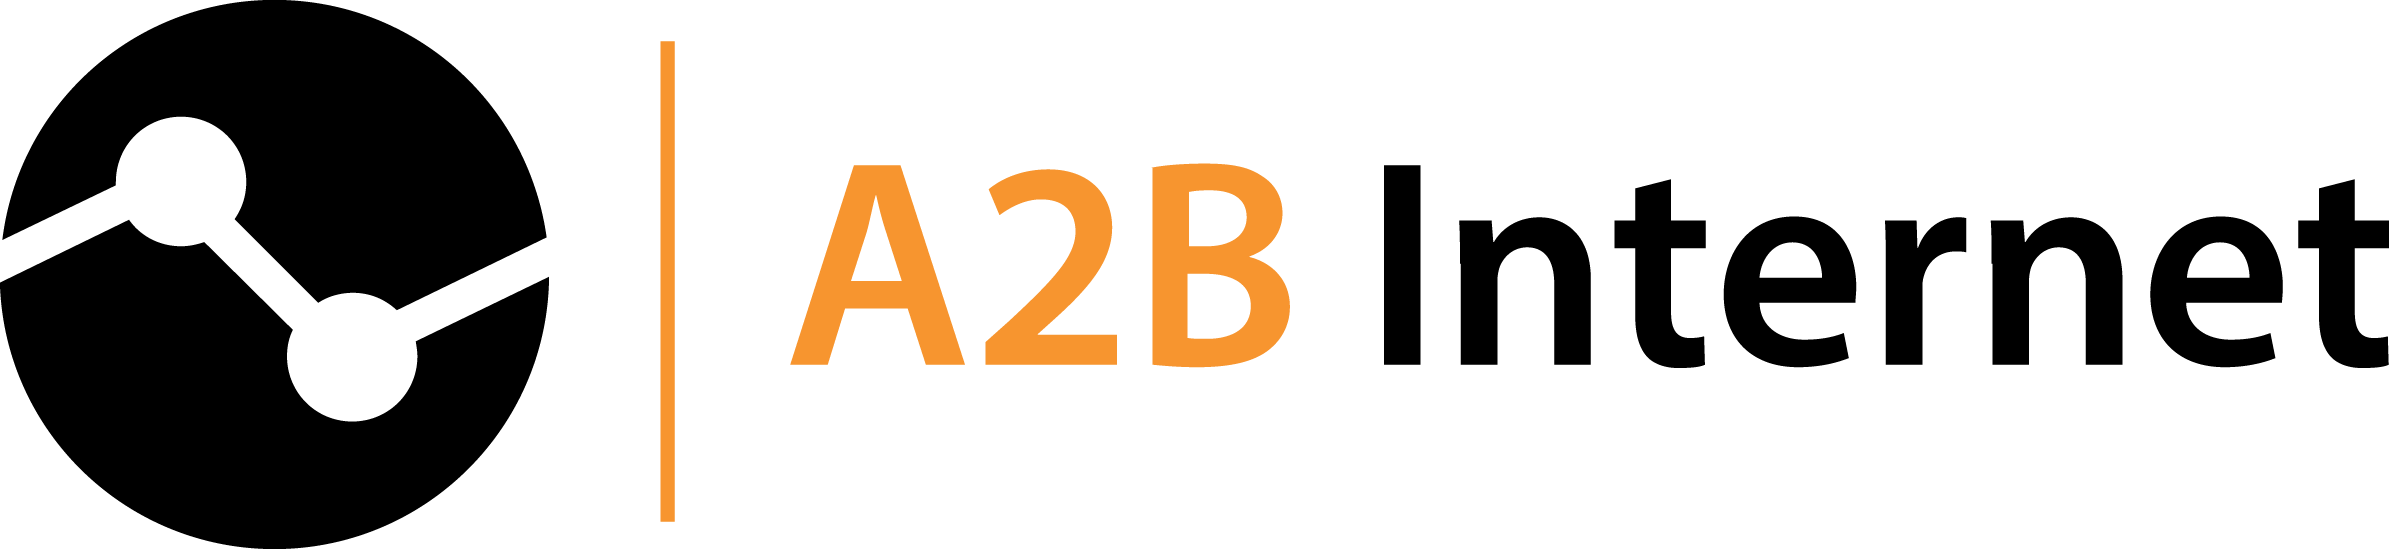 A2B Internet